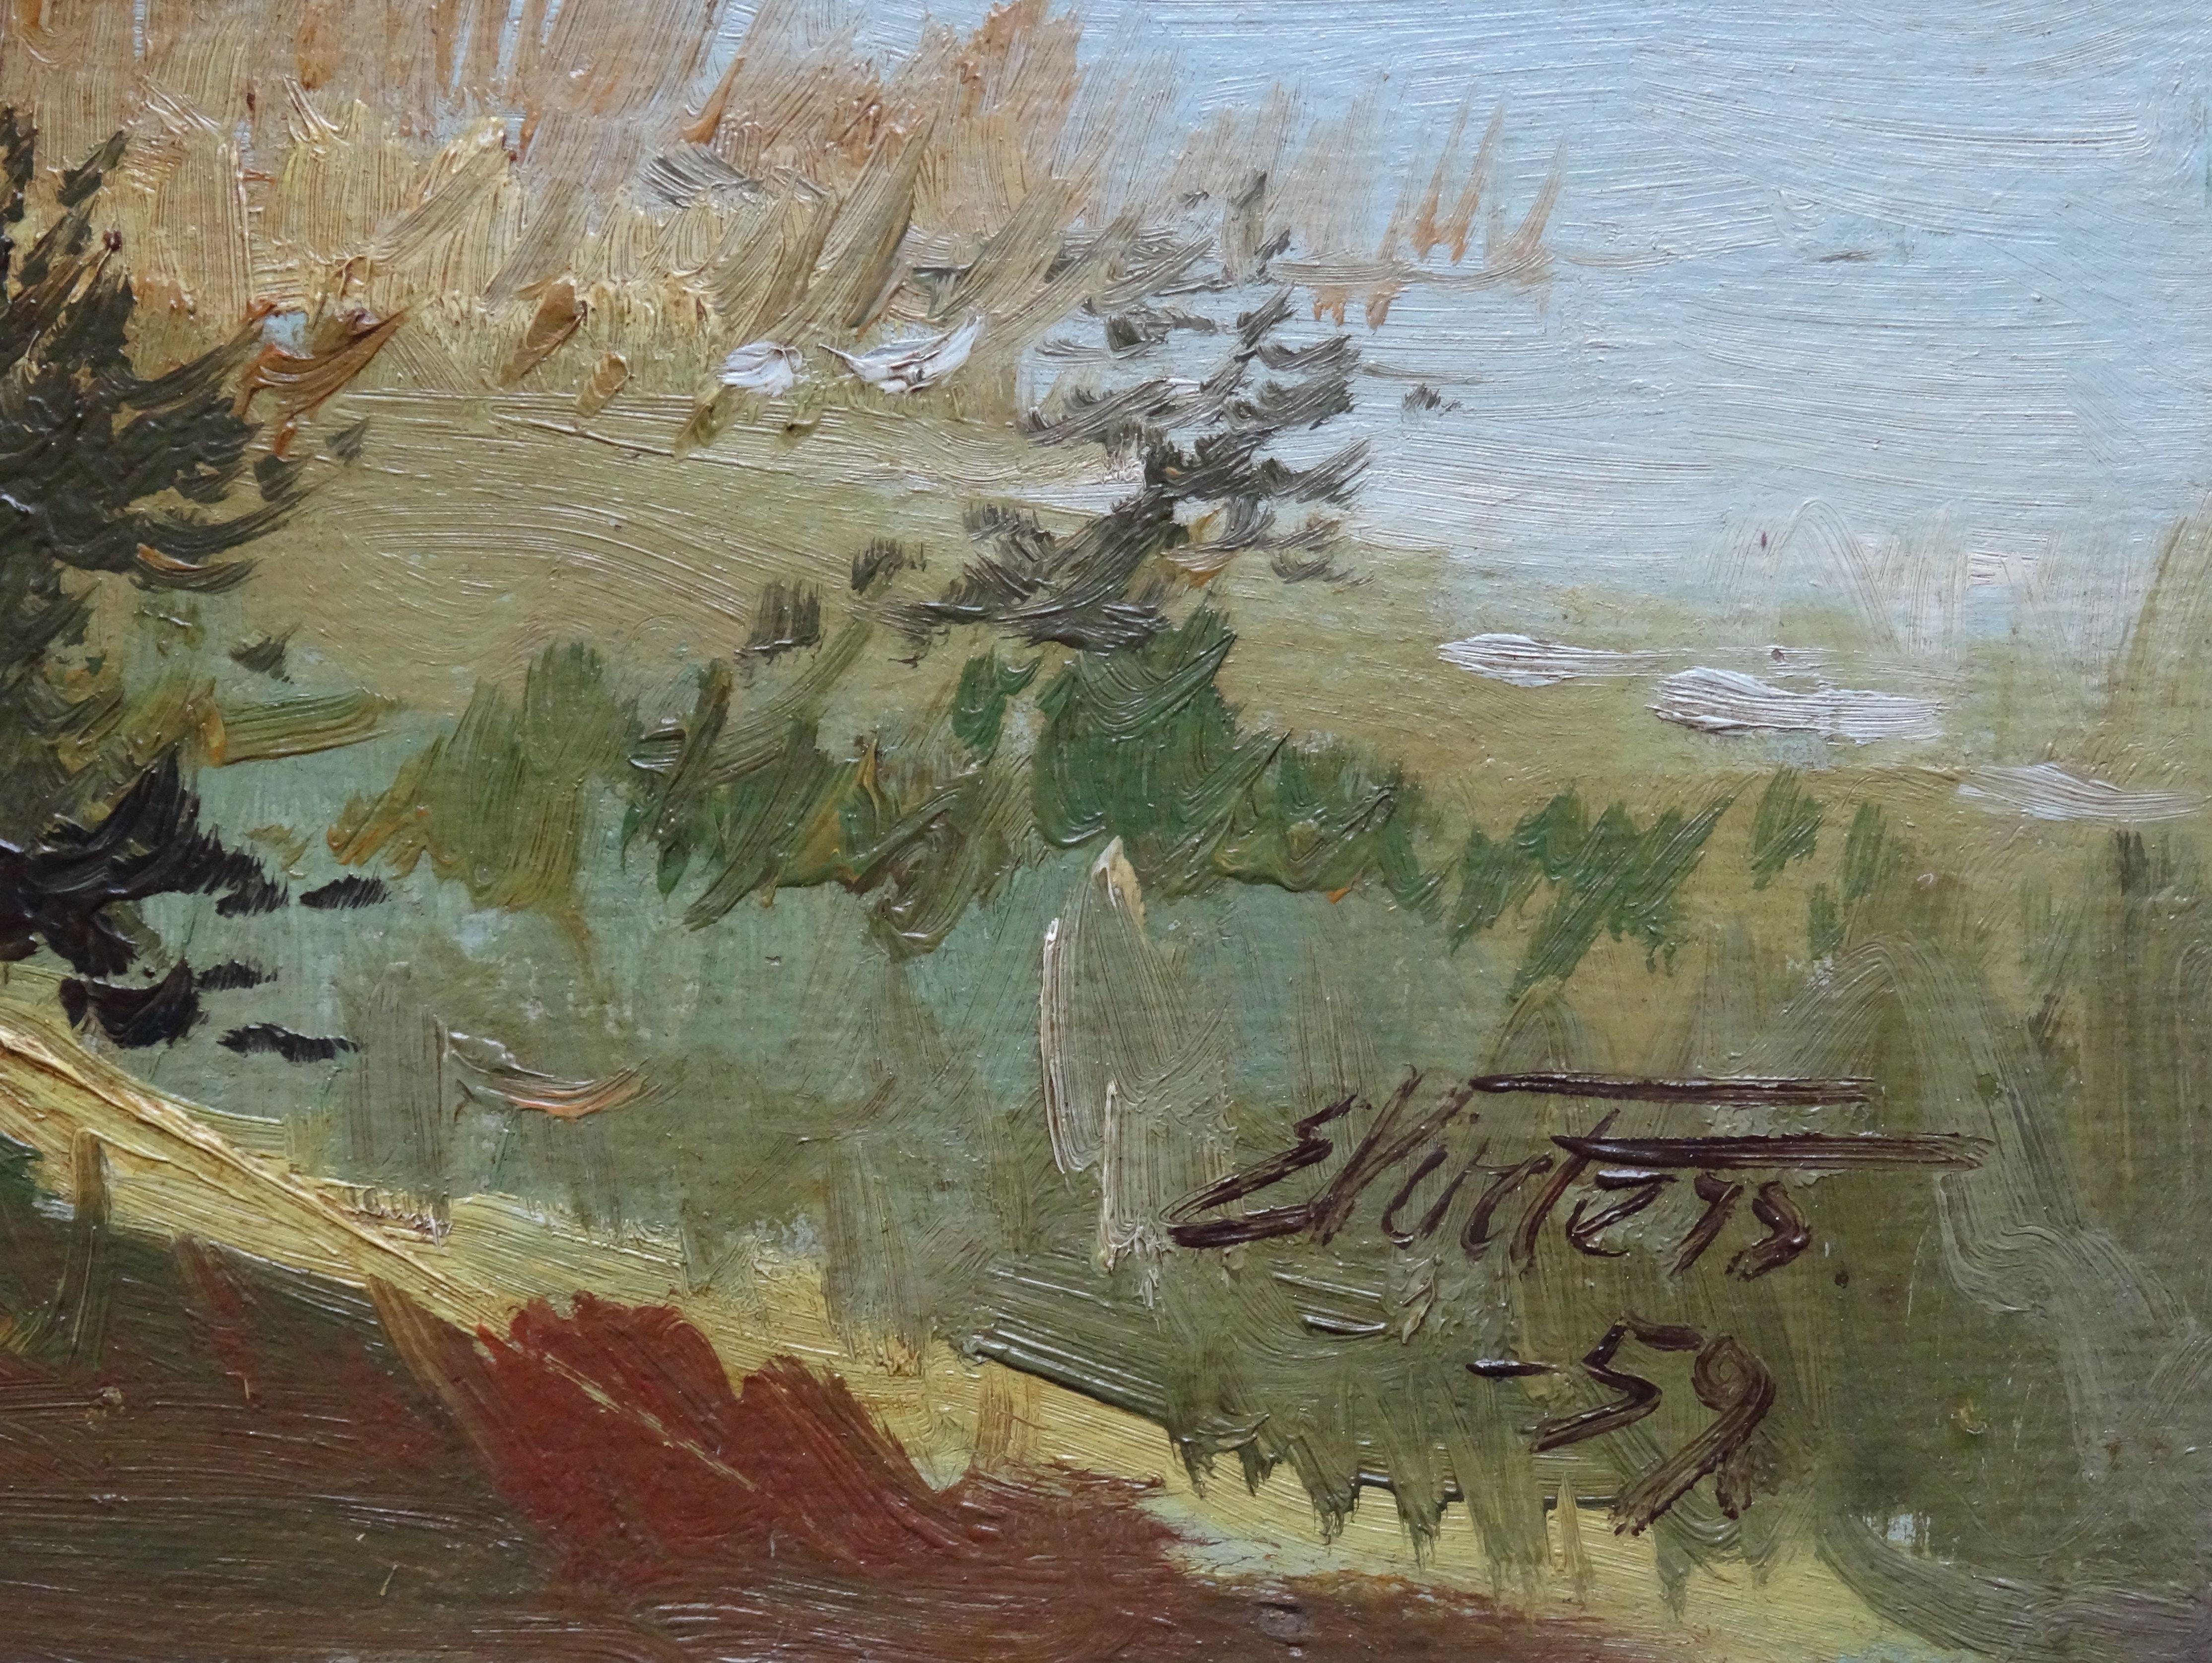 Lakeside. 1959, oil on cardboard, 36x49, 5 cm - Art by Edgars Vinters